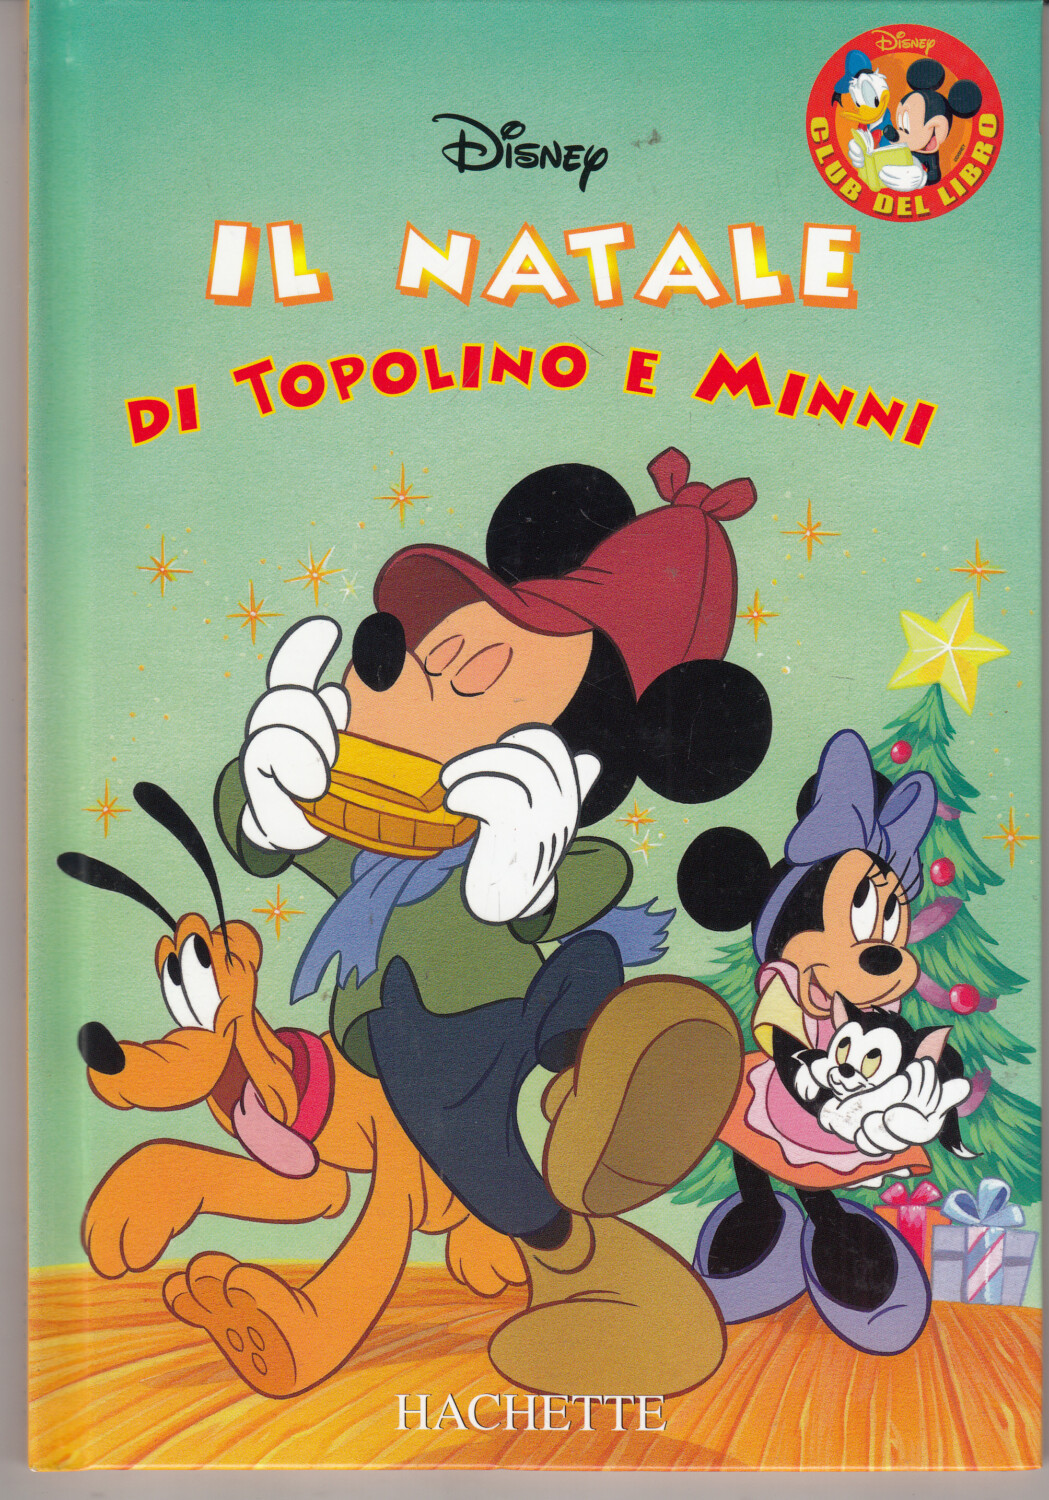 Il Natale di Topolino e Minni di Walt Disney. Collana Club del Libro ed.  Hachette – Emporio di milo